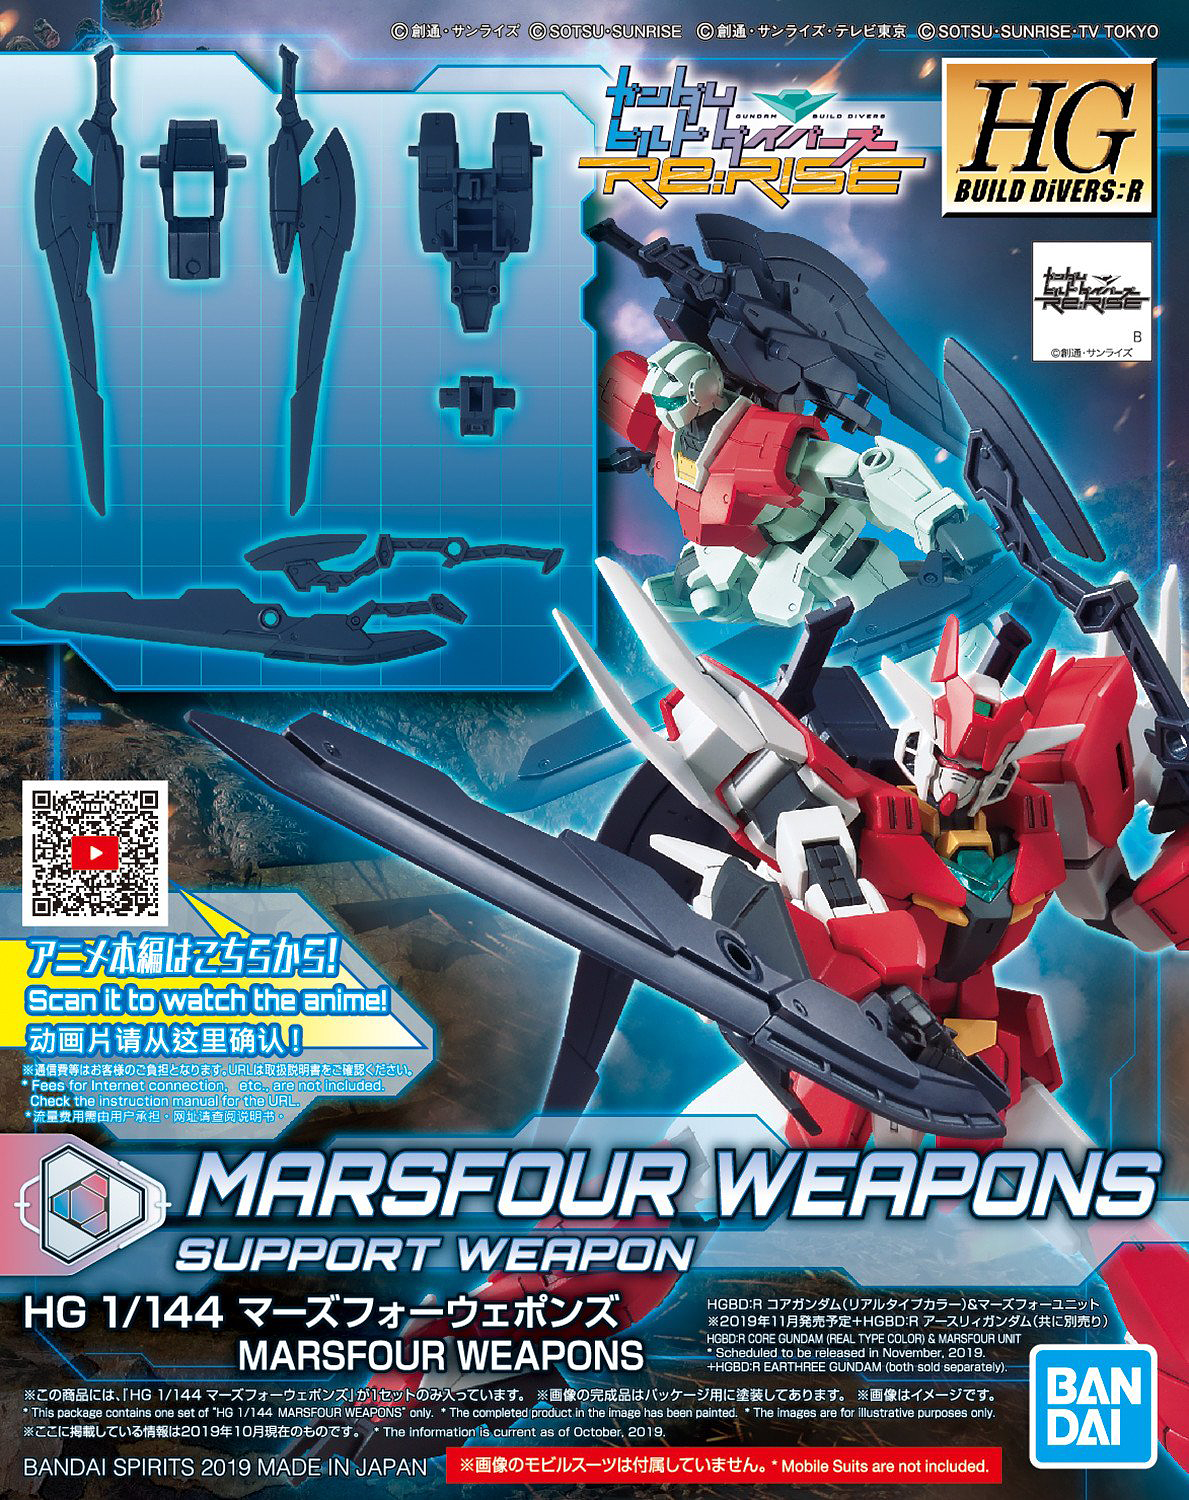 HG Gundam Marsfour Weapons 1/144 - gundam-store.dk